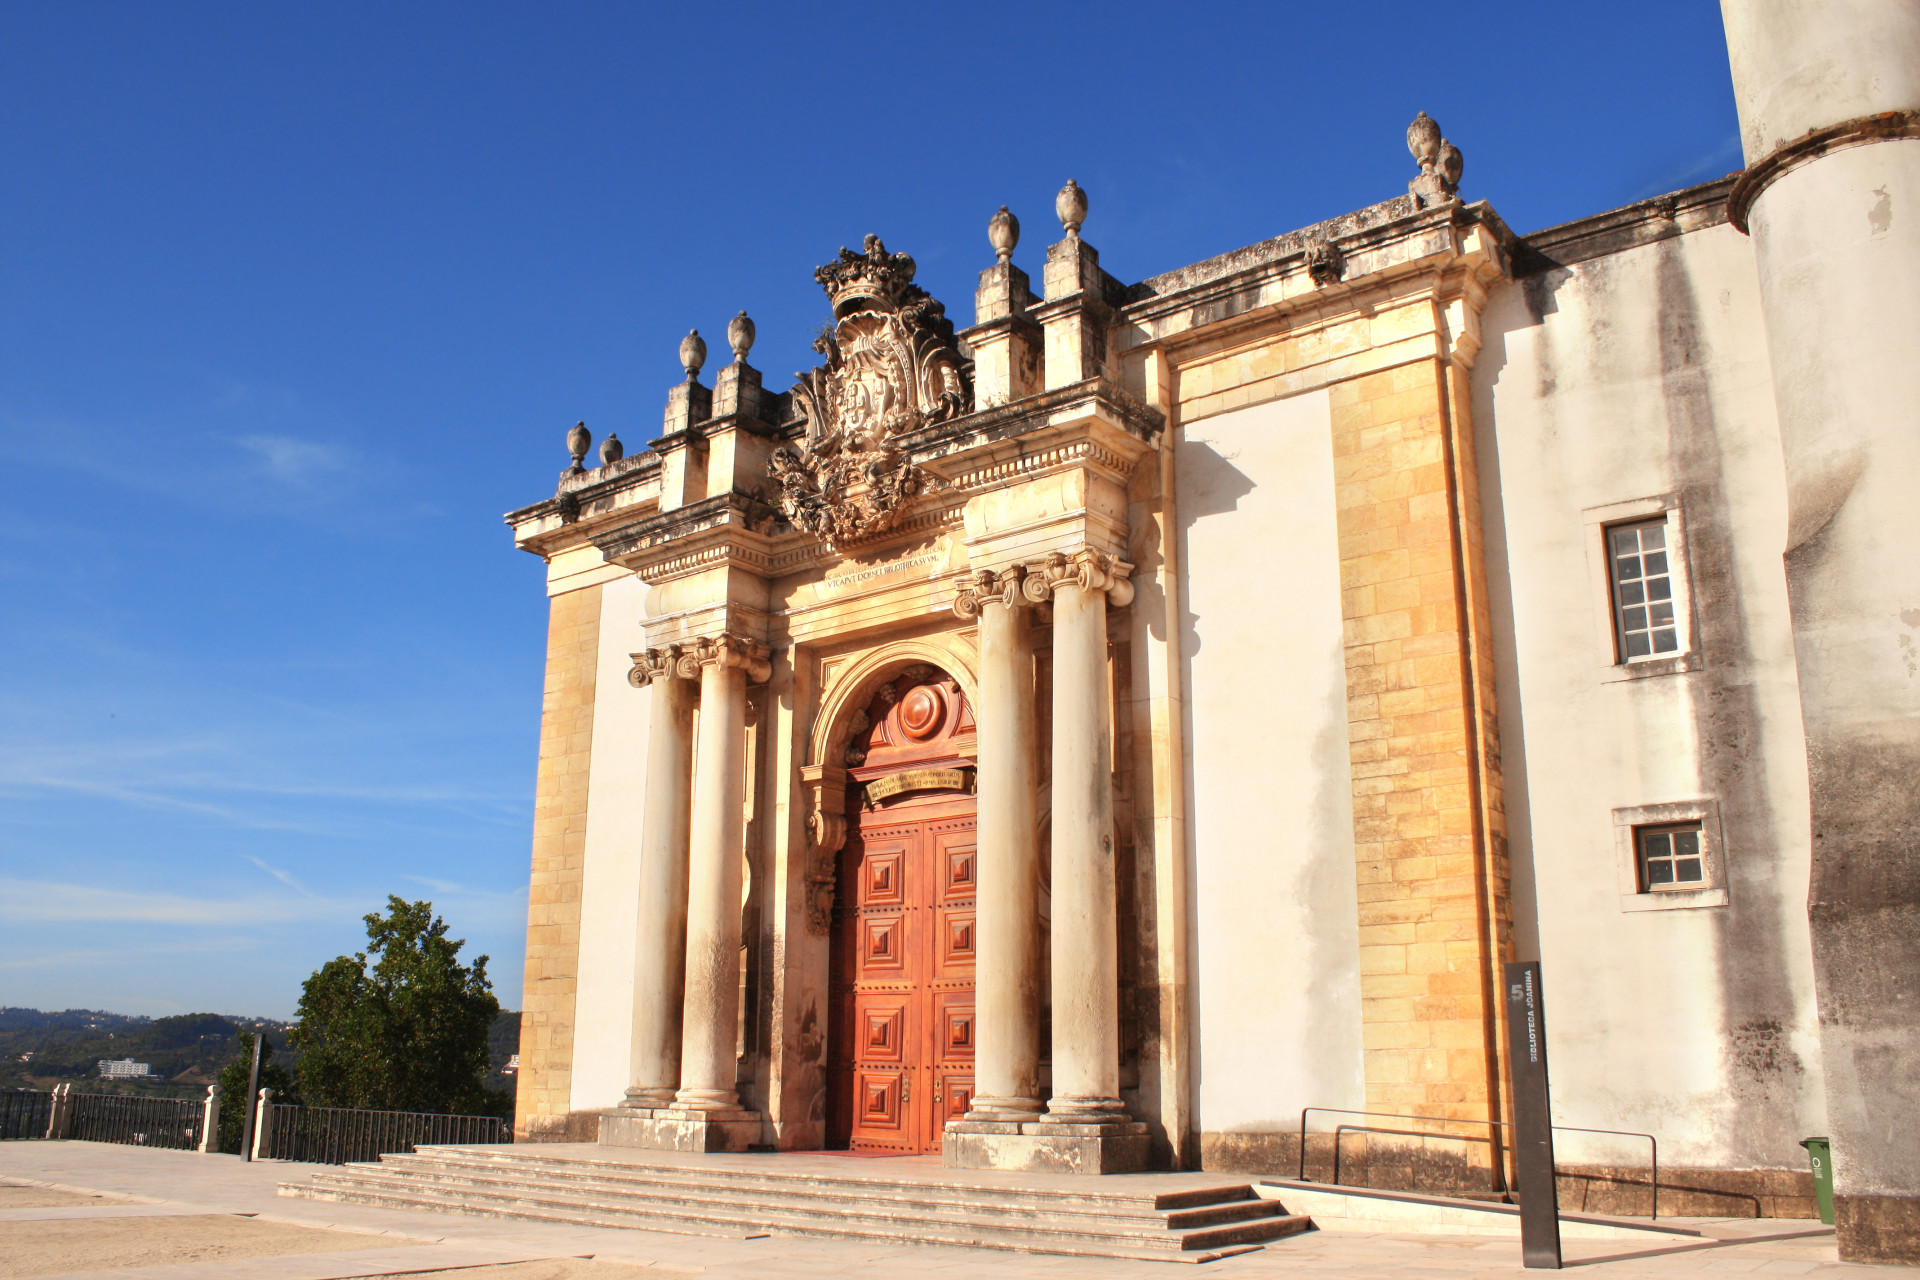 La bibliothèque Joanina se trouve au sein de l'Université de Coimbra et fut construite au XVIIIe siècle, sur l'ordre du roi Jean V de Portugal...